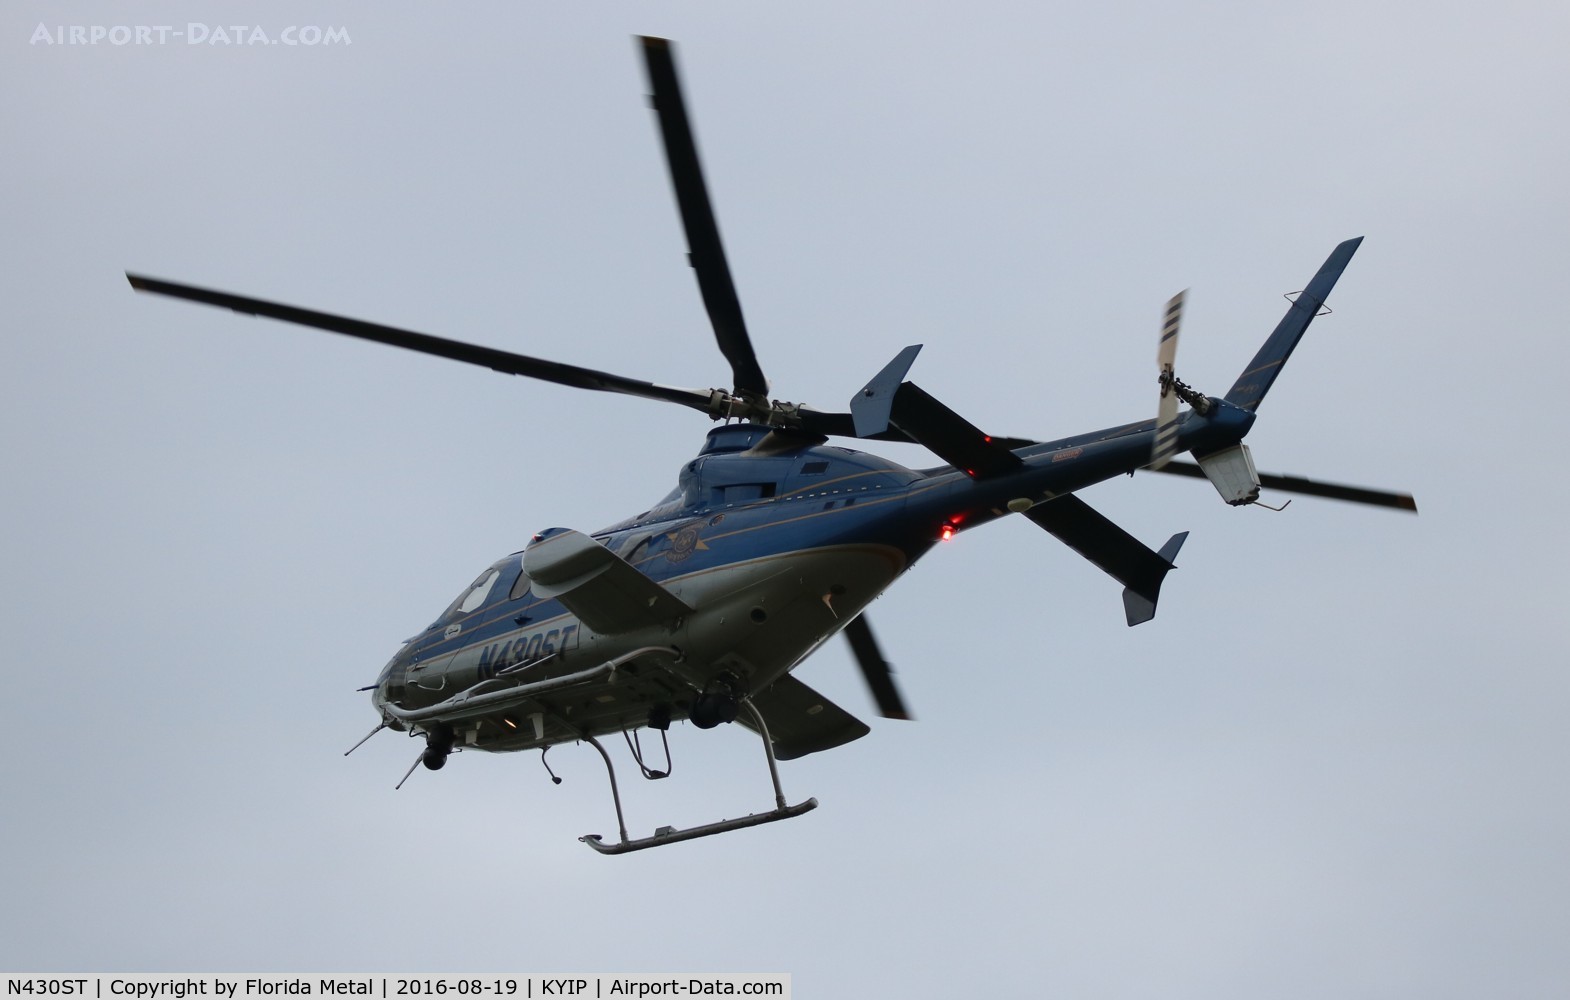 N430ST, 2000 Bell 430 C/N 49071, Bell 430 zx